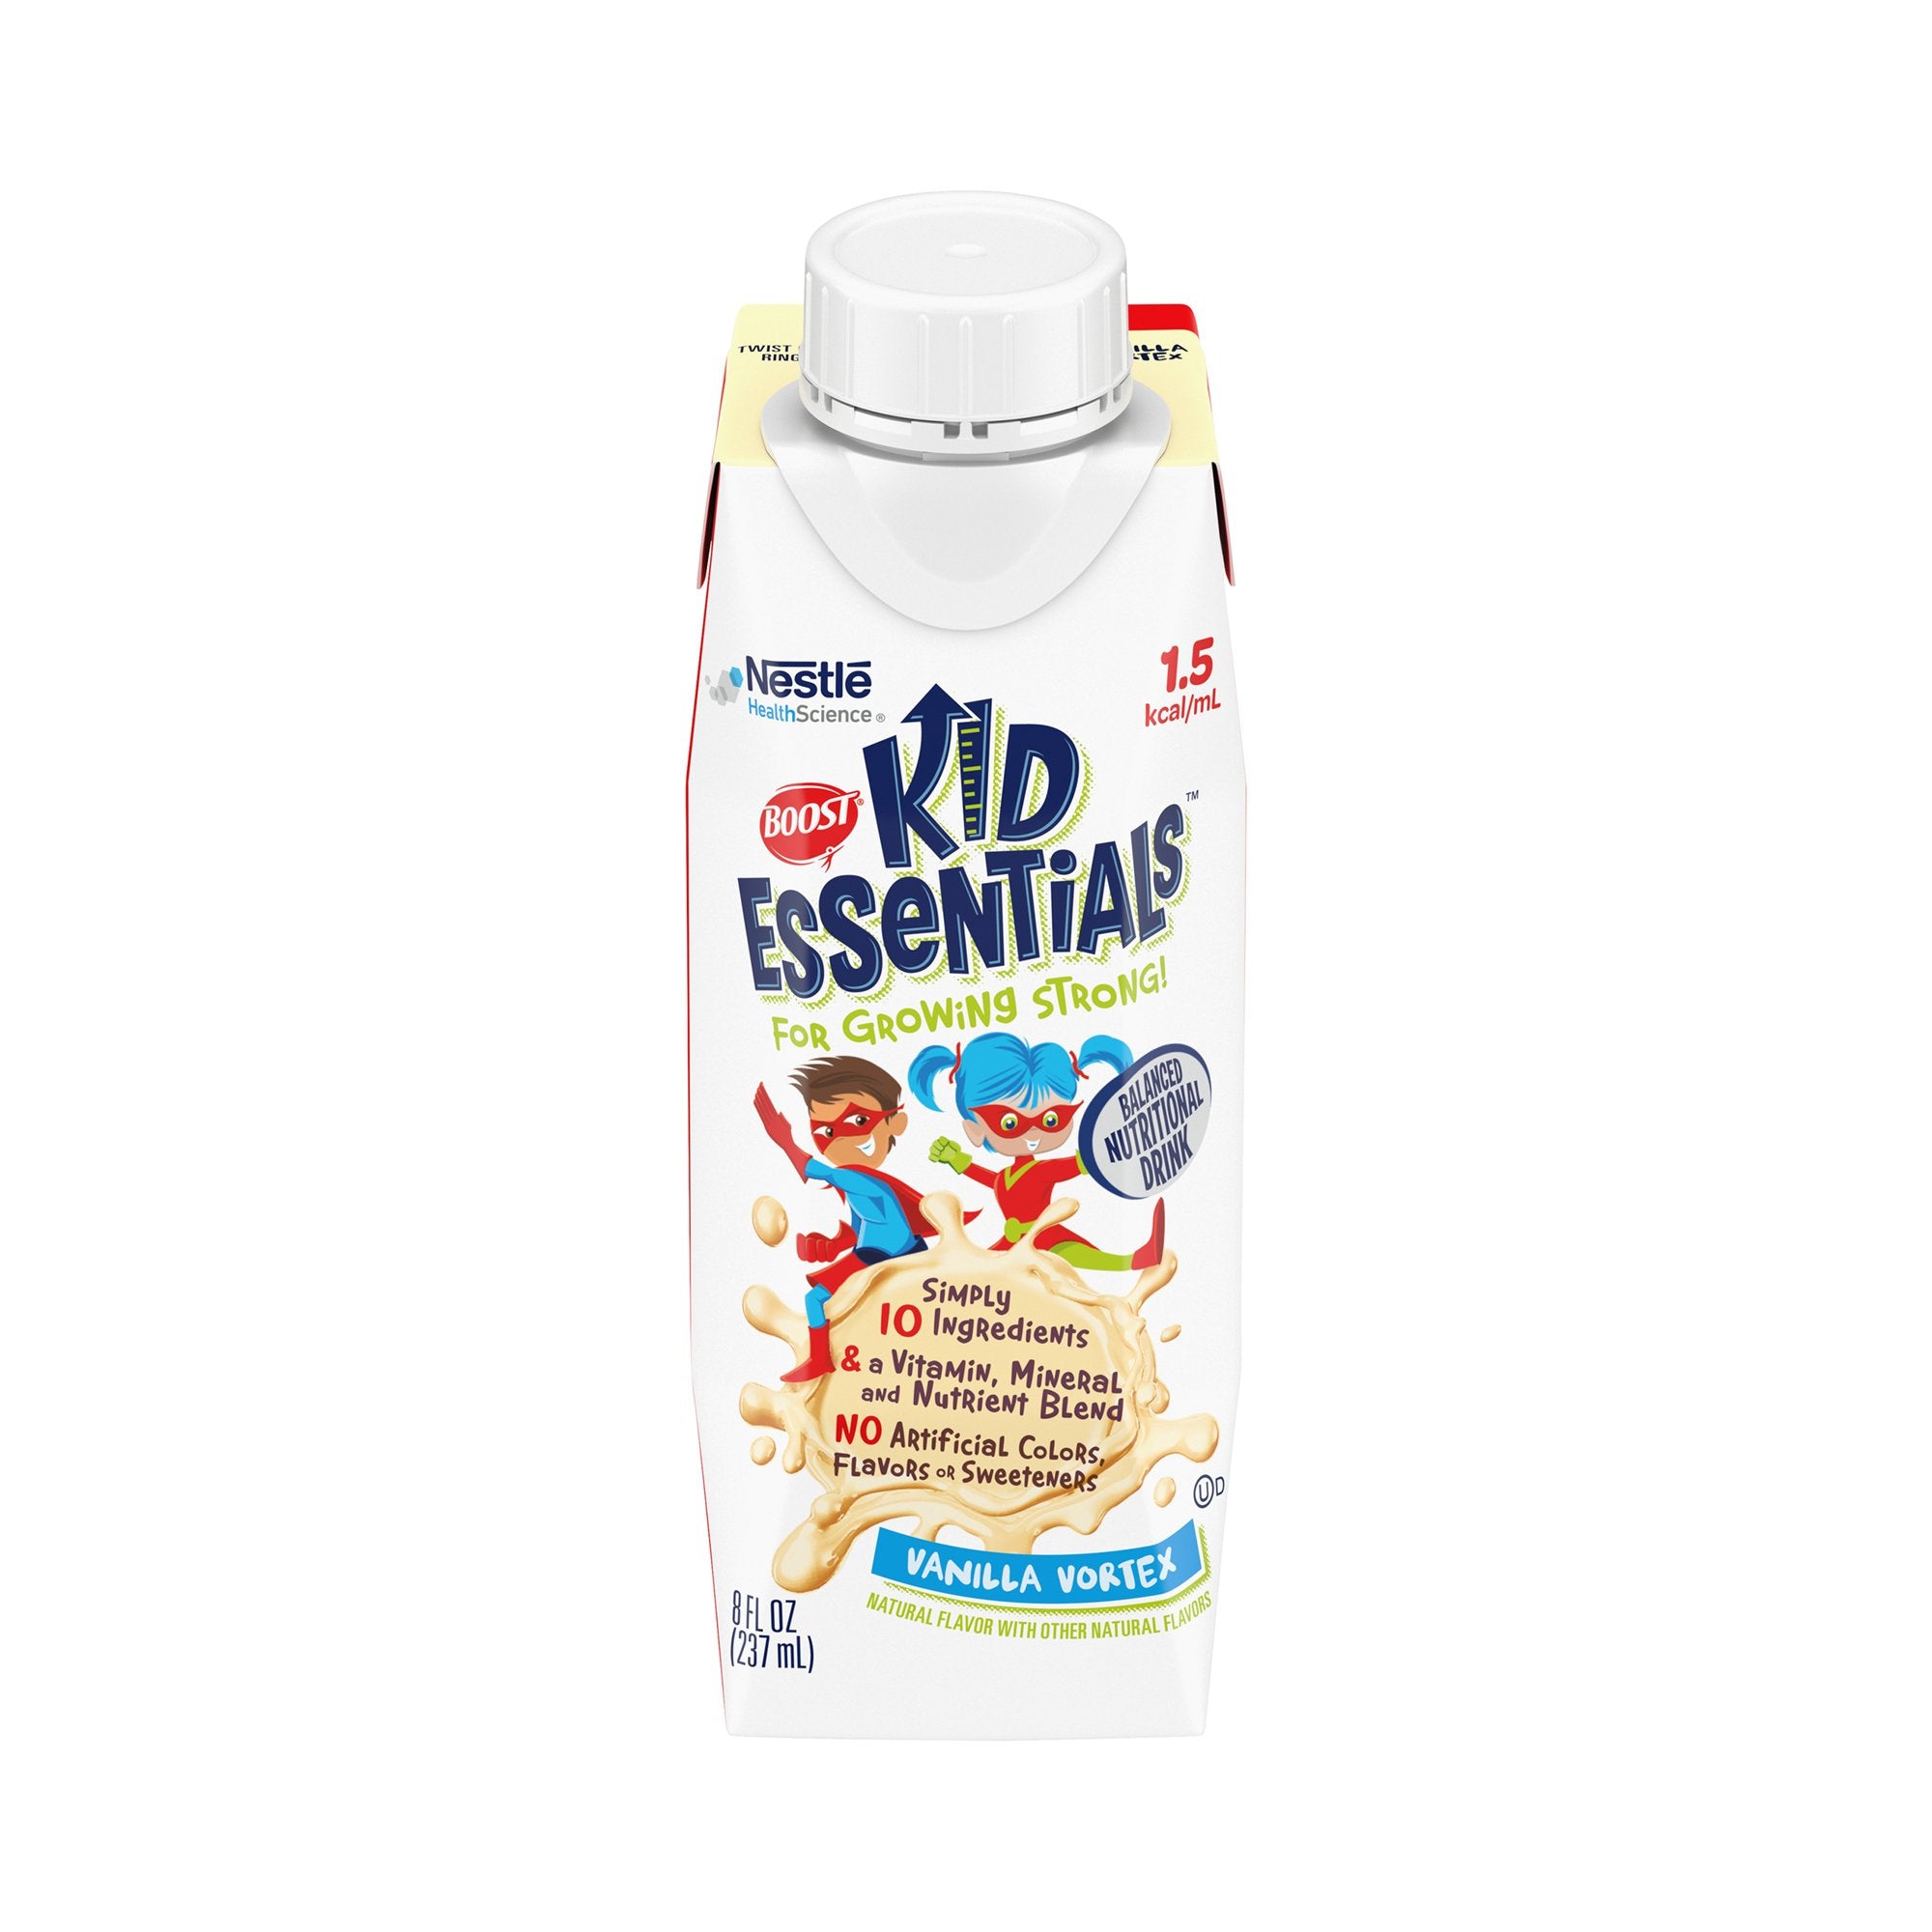 Boost Kid Essentials 1.5 Vanilla Pediatric Supplement, 24 Cartons, 8 oz